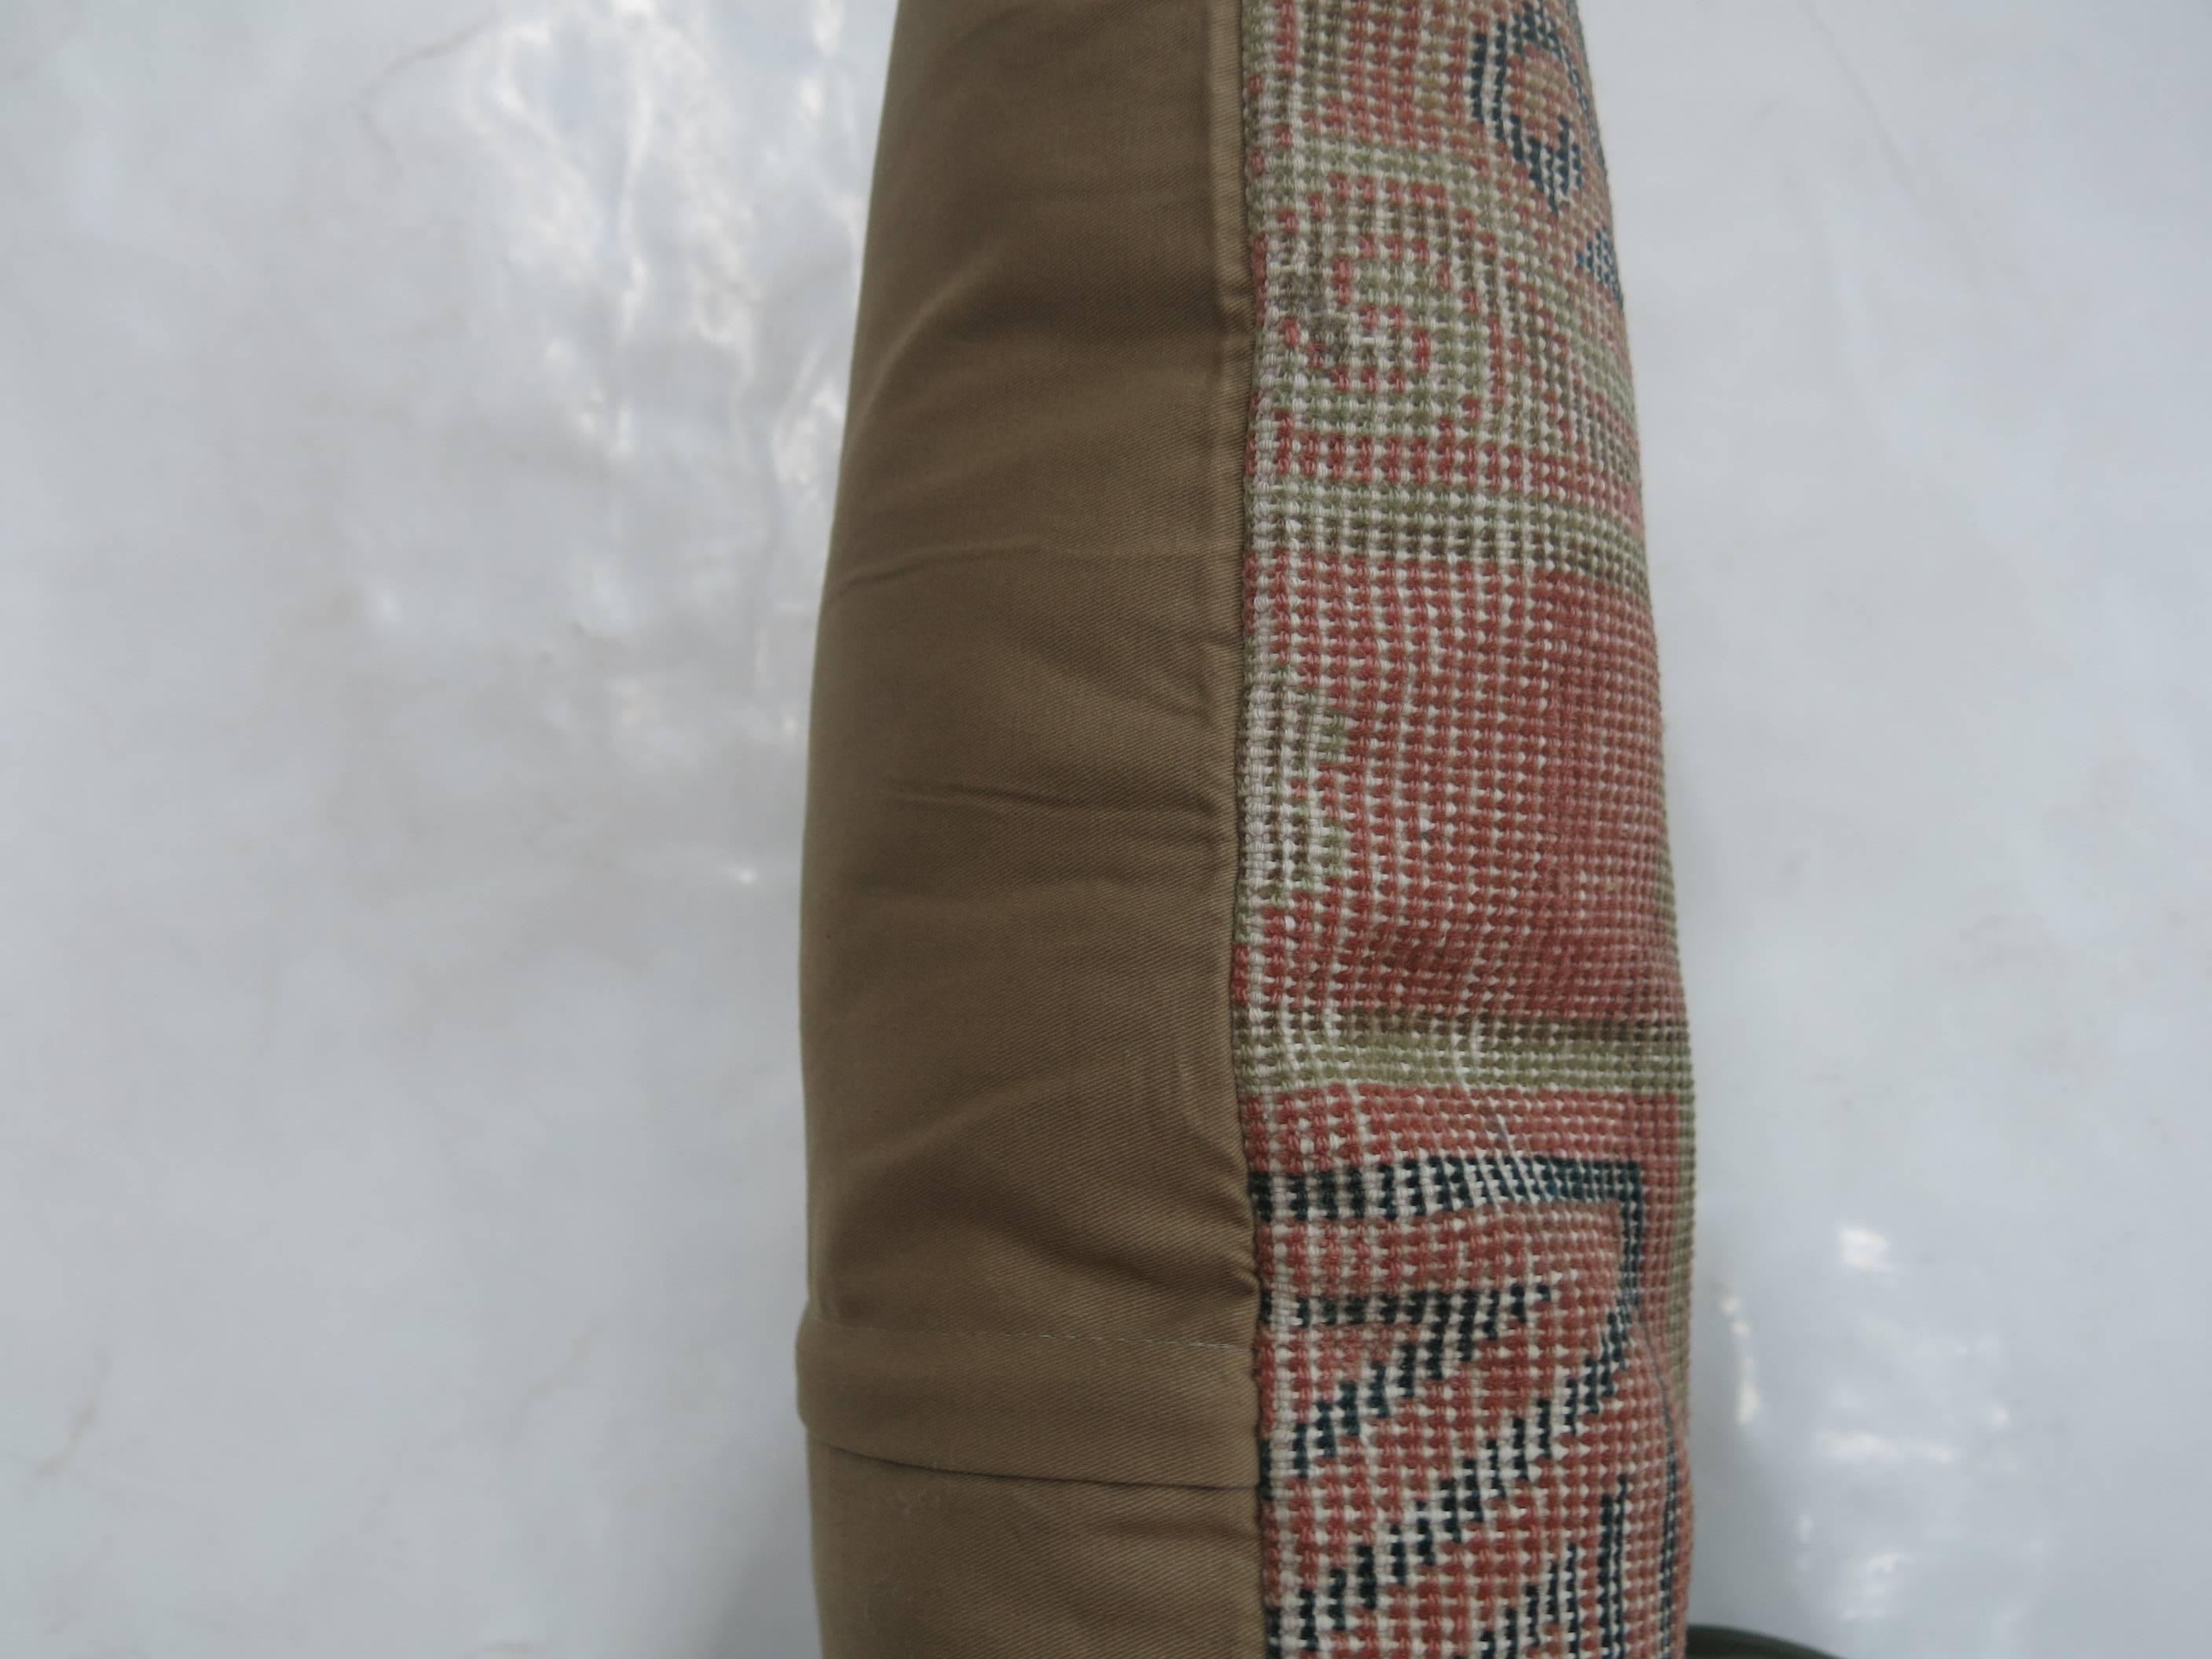 Kissen aus einem antiken Khotan-Teppich aus dem 19. Jahrhundert mit Baumwollrücken. Inklusive Reißverschluss.

16'' x 16''